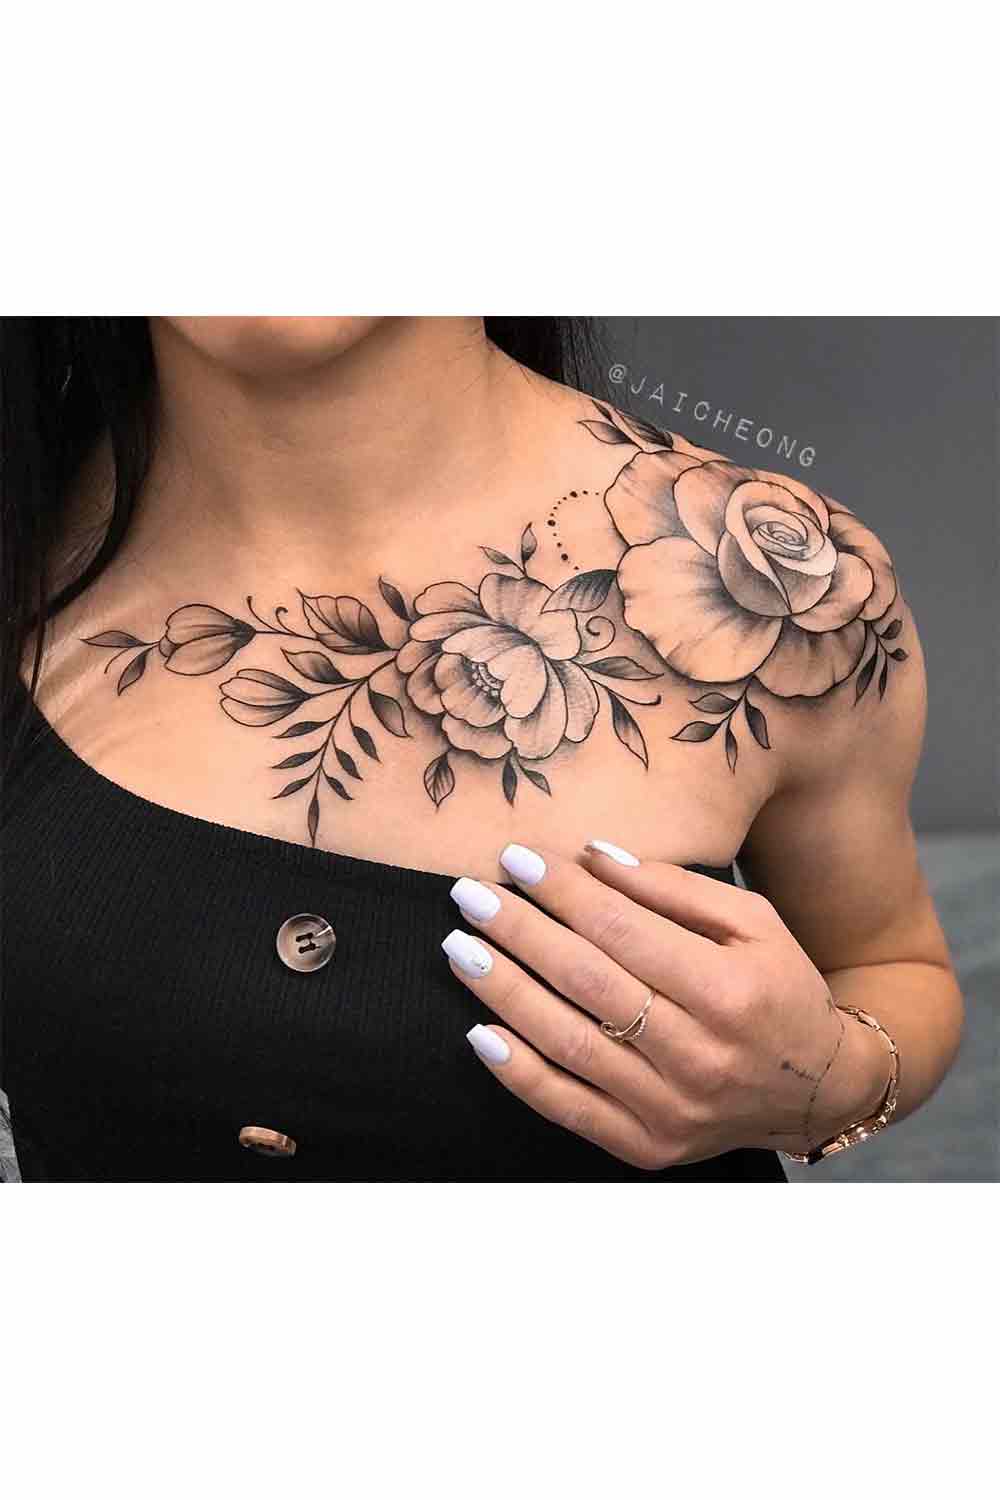 tatuagens-de-rosas-8 